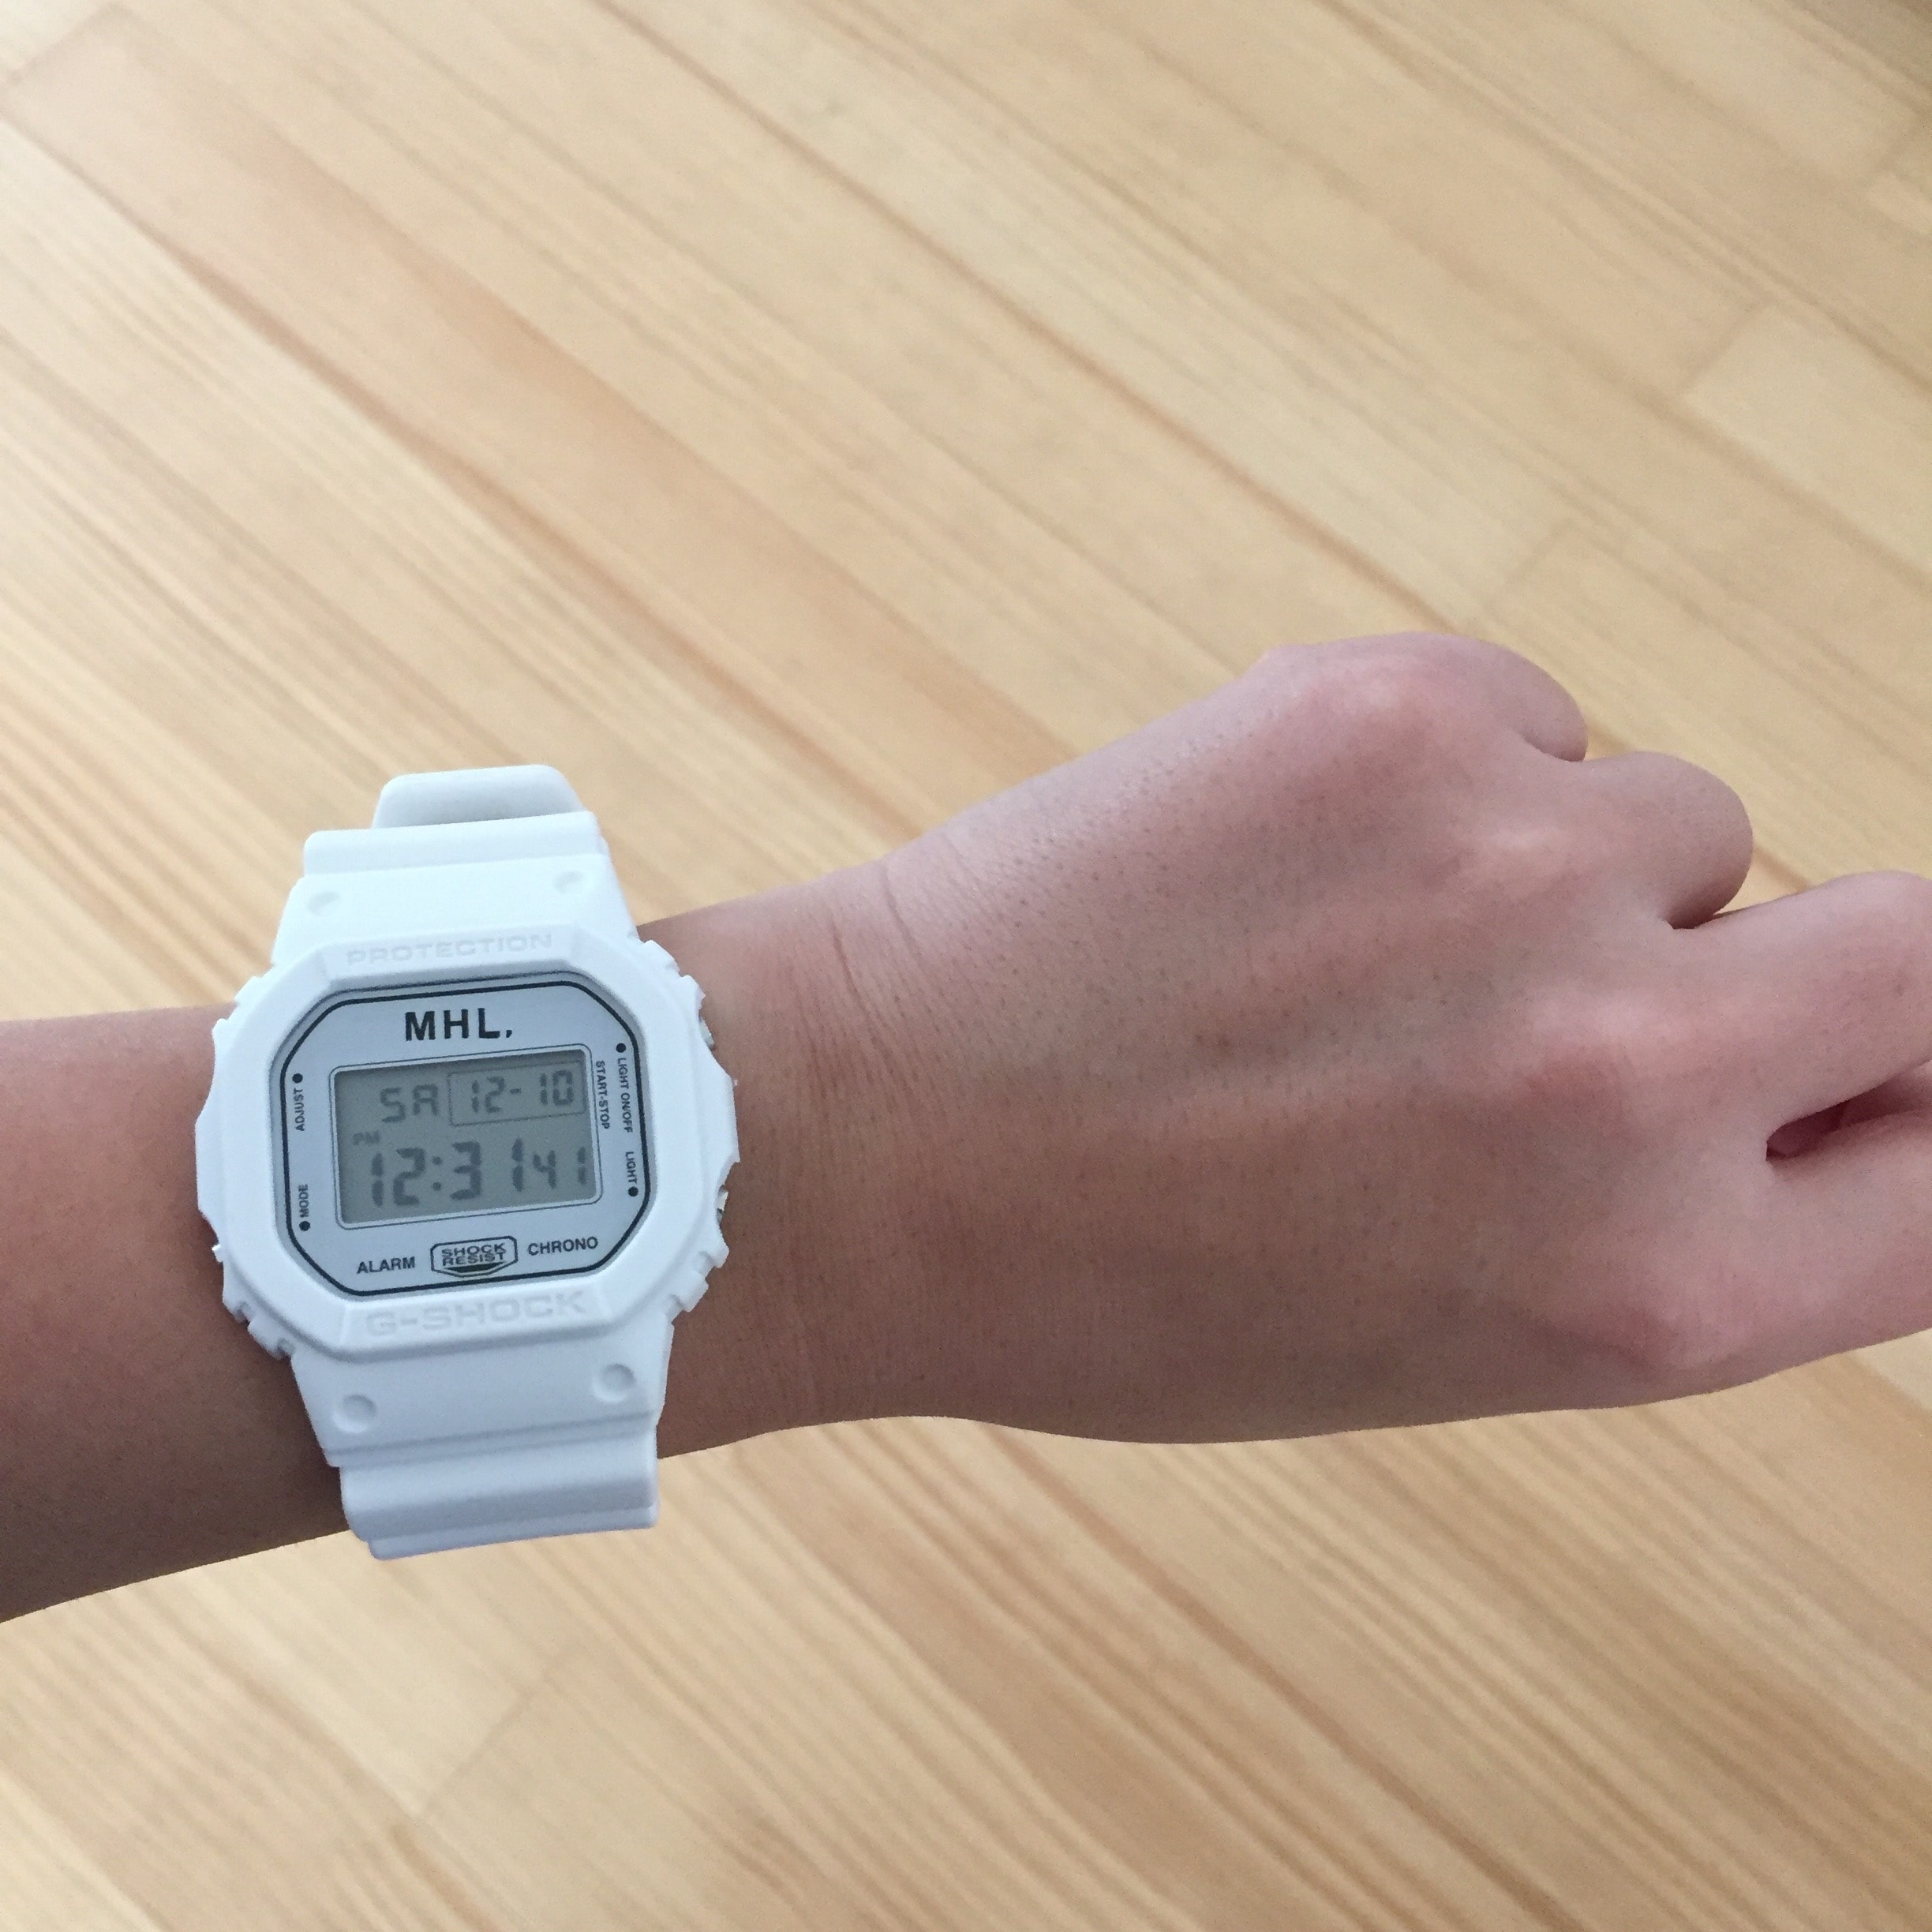 MHL×G-SHOCK 白の腕時計 【使用済】ファッション小物